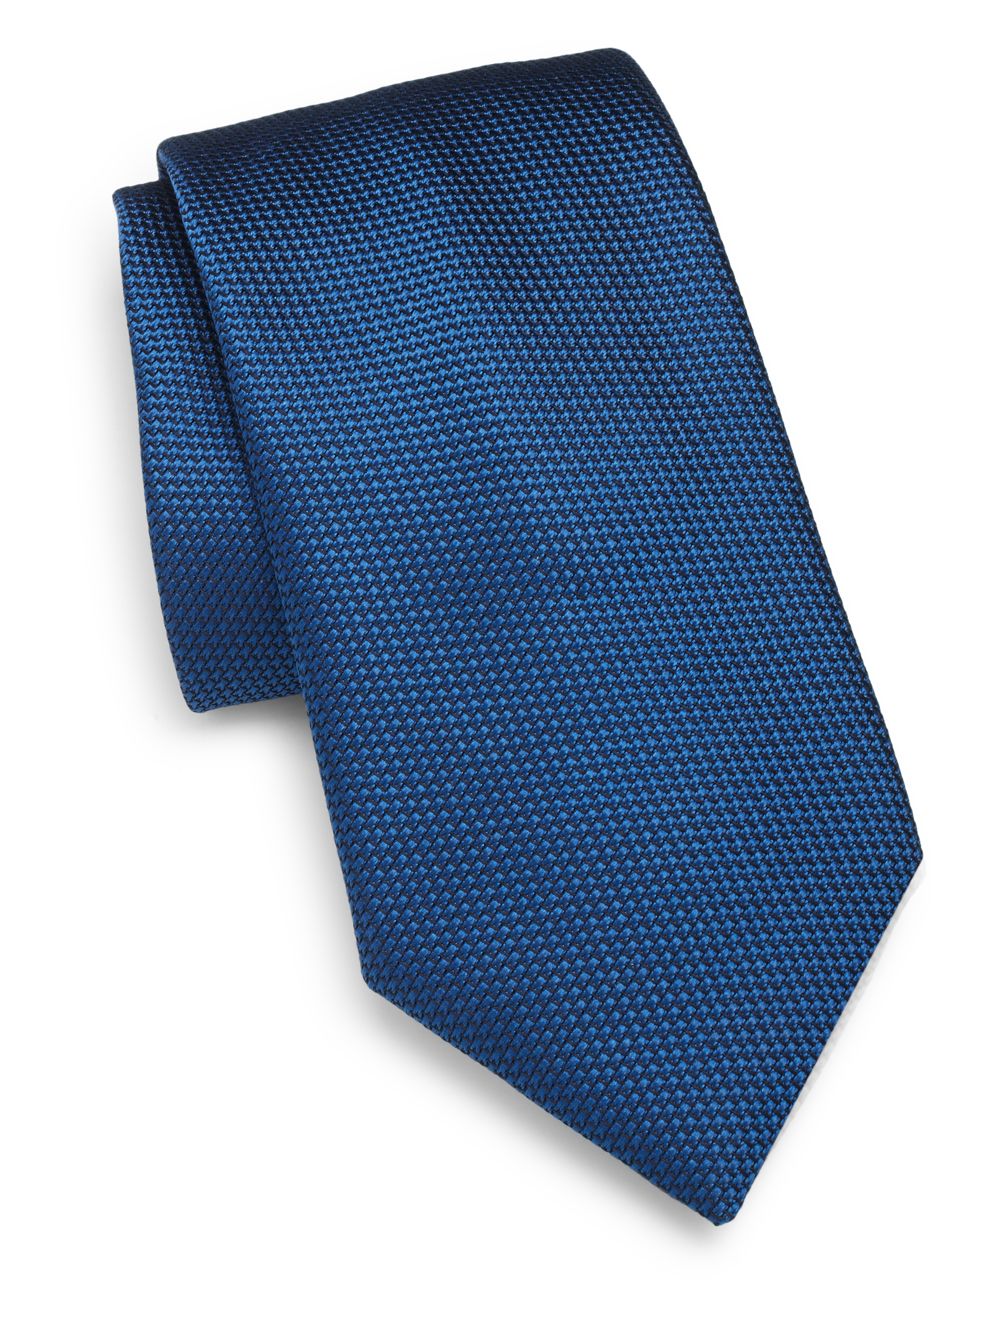 Шелковый галстук с микро узором Charvet, синий